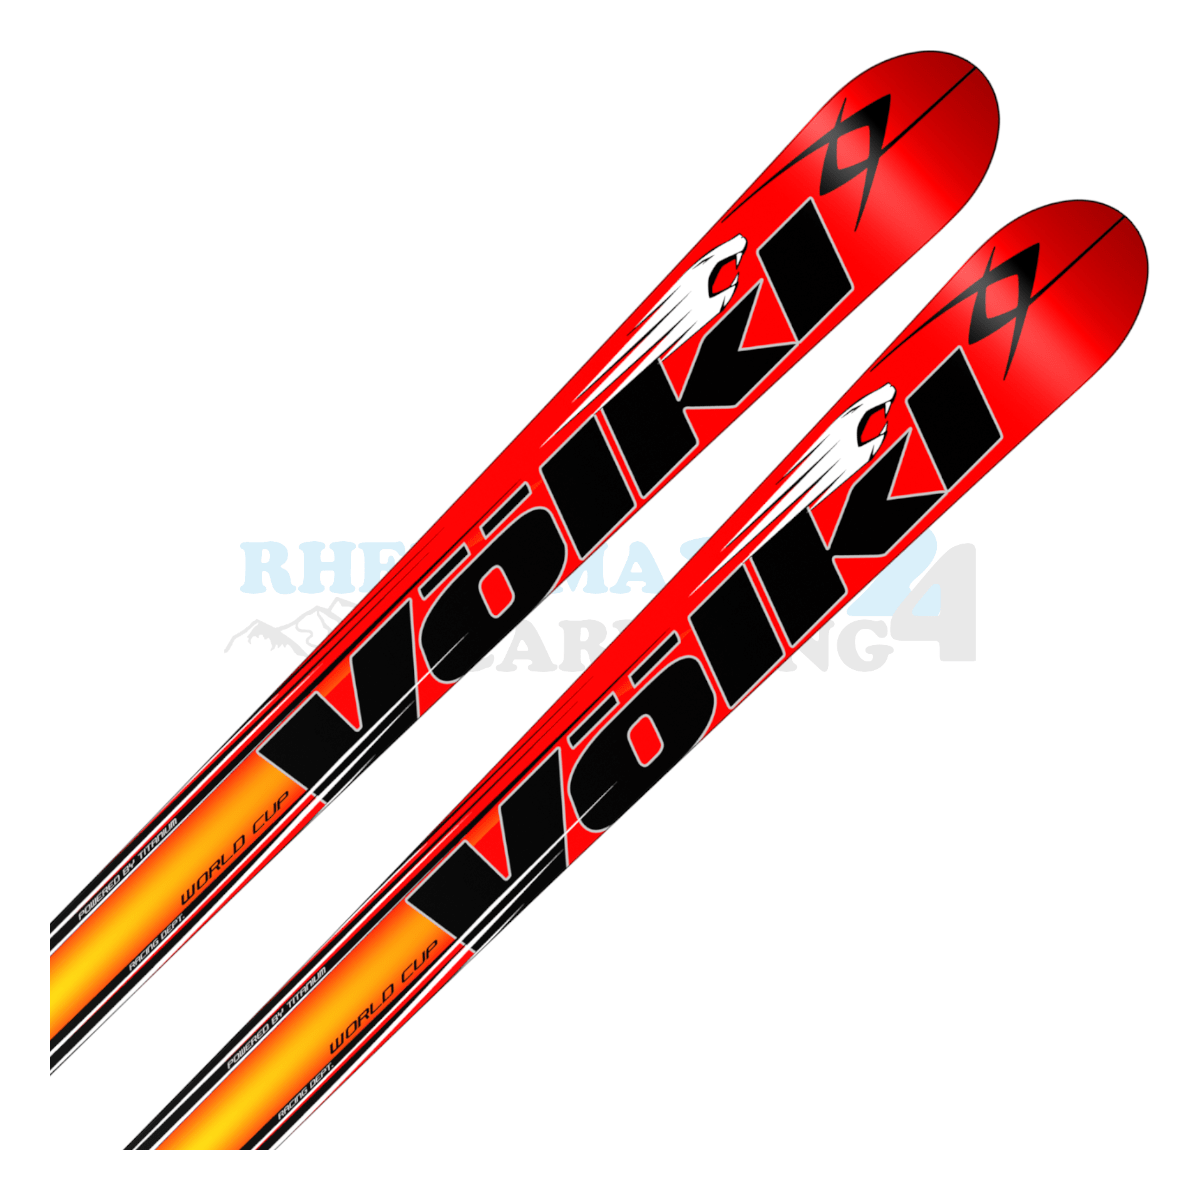 Völkl Racetiger Super-G mit dem Design eines Tigers, Ansicht des oberen Teils des Skis 